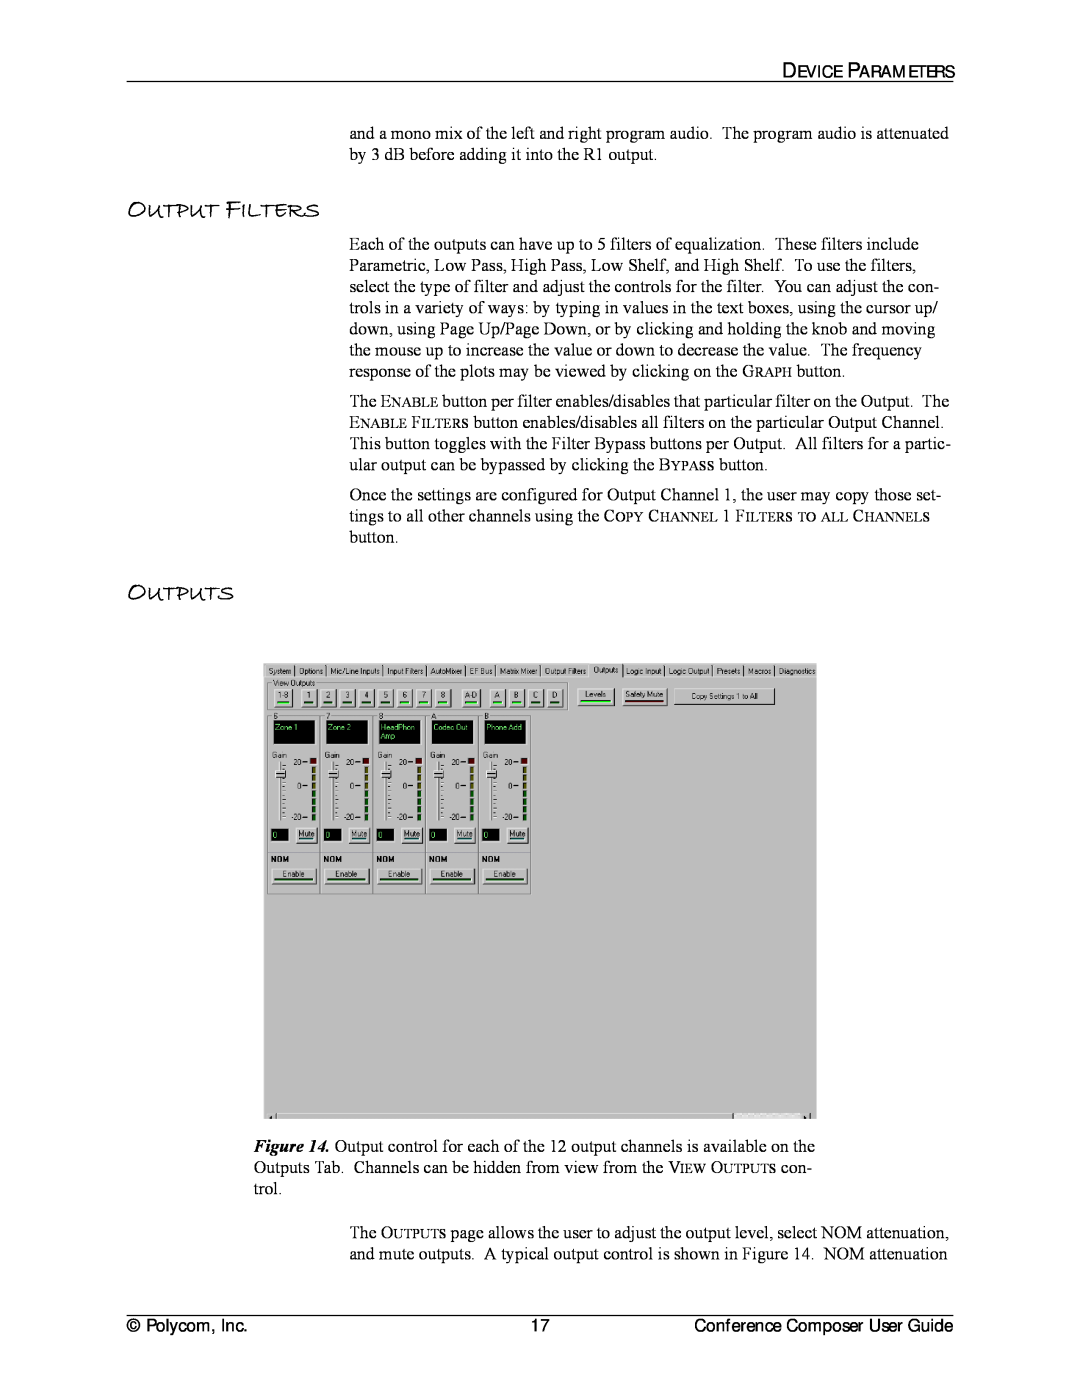 Polycom CCUG-0100-01 manual Output Filters, Outputs 